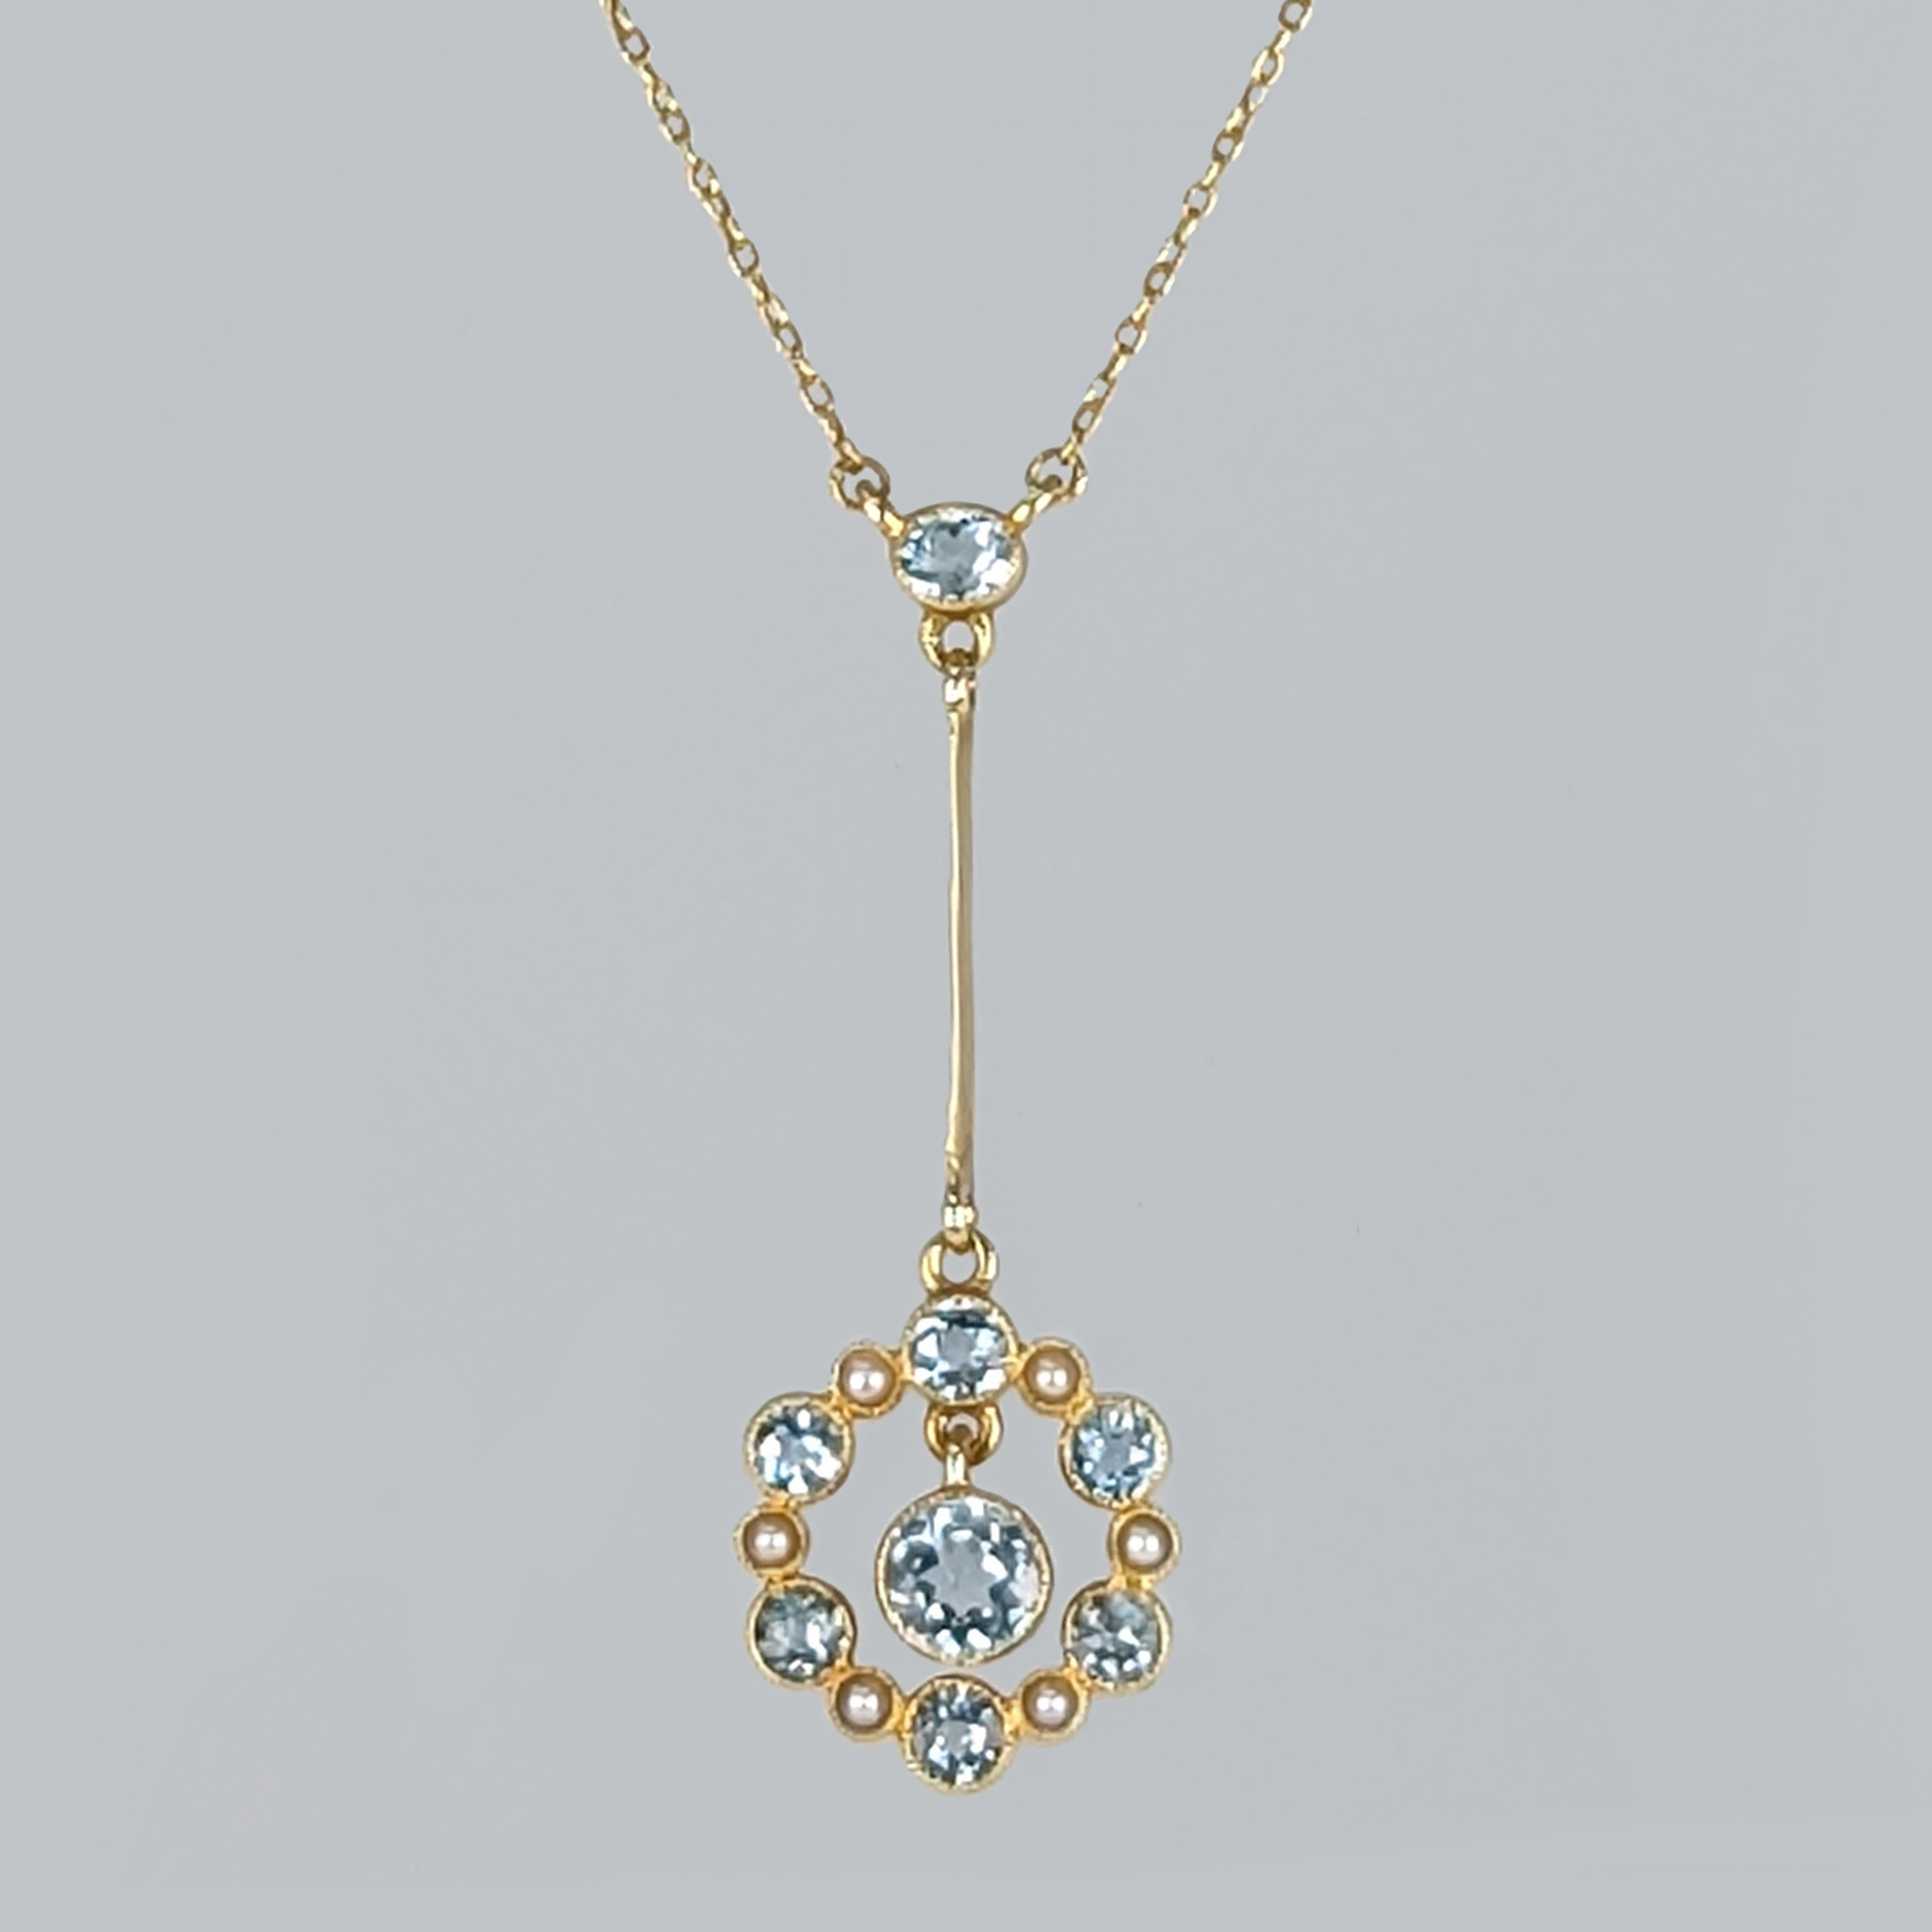 Antique Aquamarine and Pearl Necklace